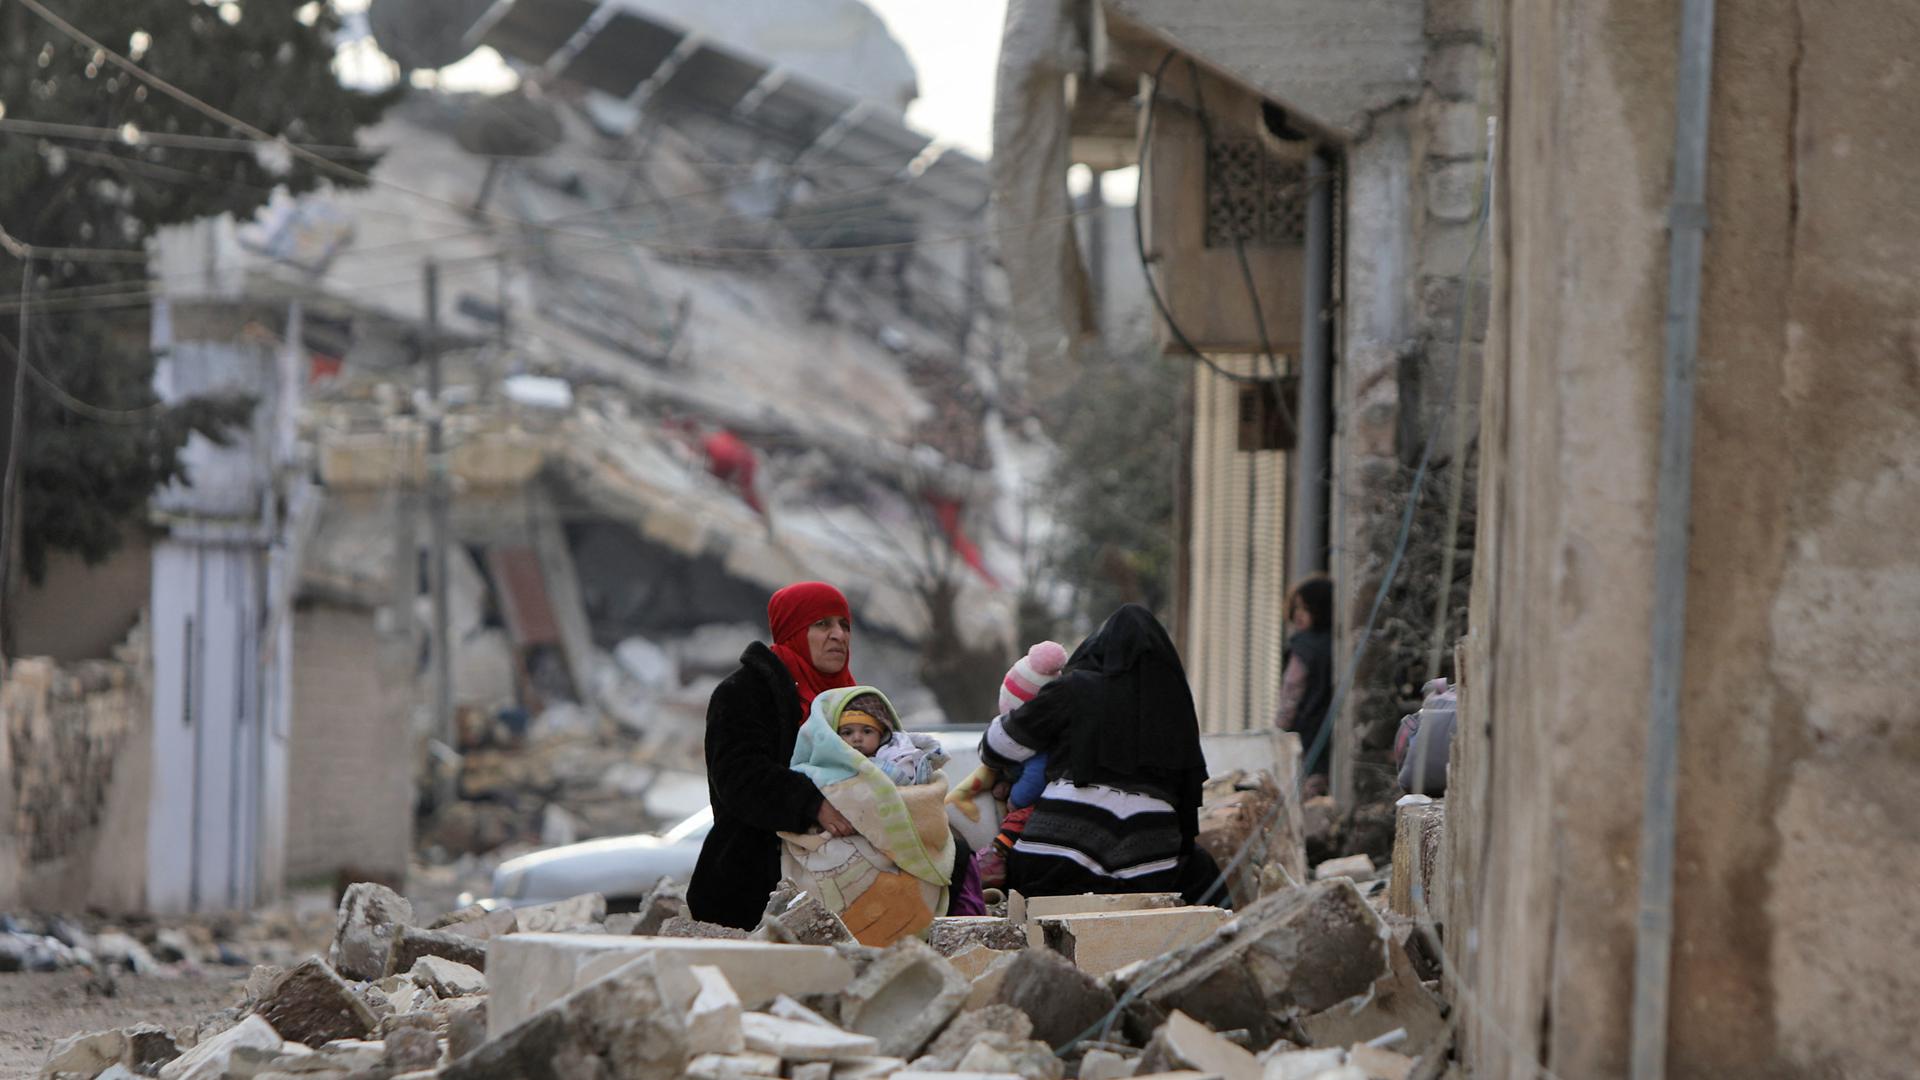 Mulheres e crianças sírias no exterior de edifícios desmoronados na cidade de Jandairis, Aleppo